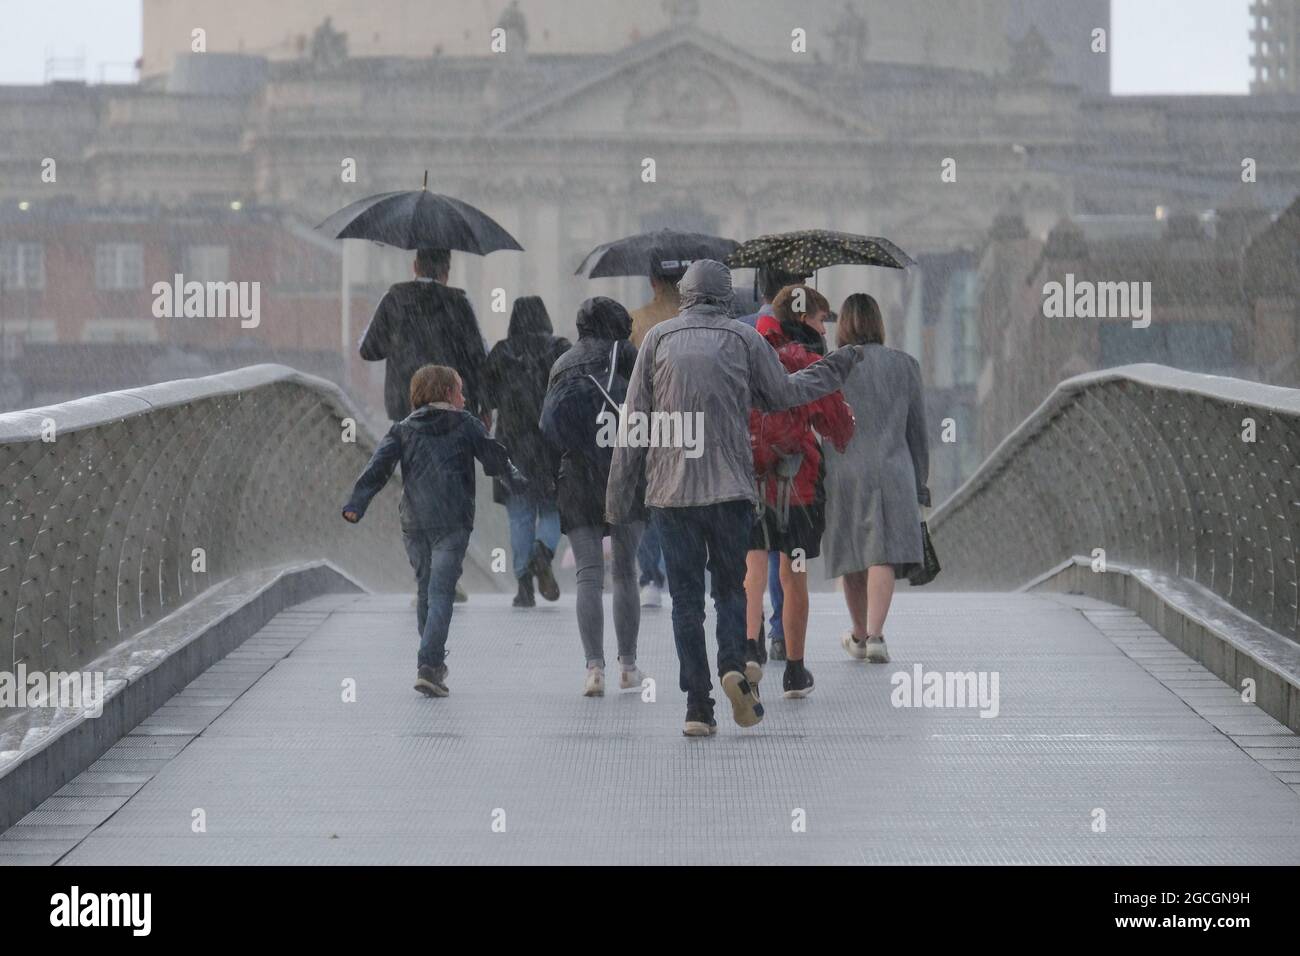 Londra, Regno Unito. Un gruppo di persone cammina lungo il Millennium Bridge durante una discesa torrenziale. Recenti forti piogge hanno causato un'inondazione di flash. Foto Stock